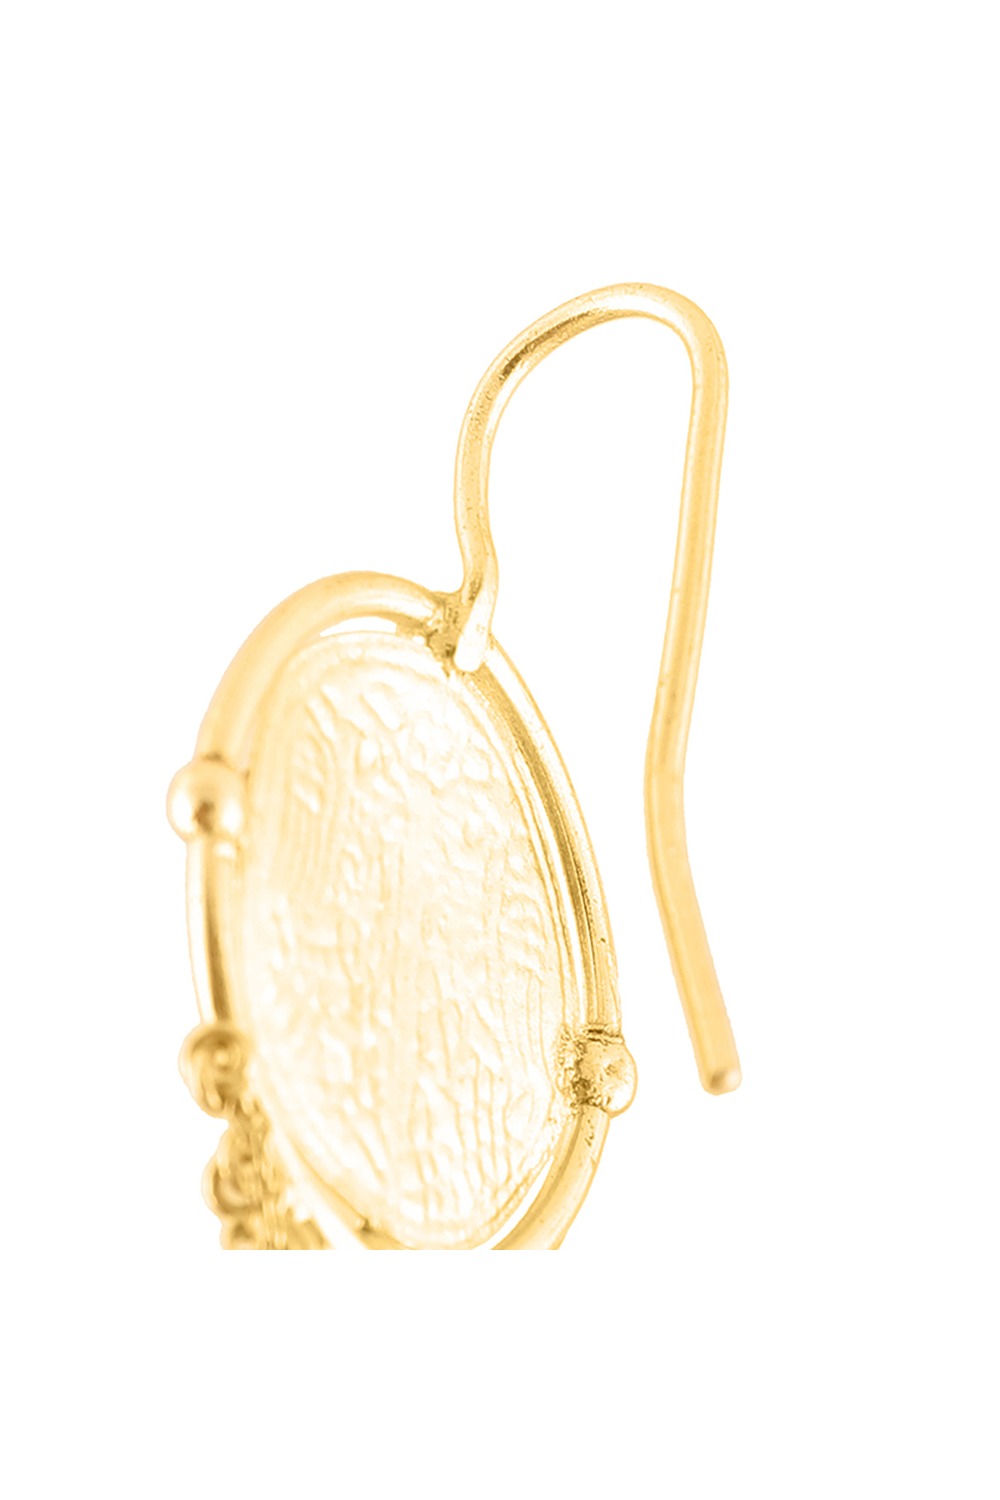 Gleb Muhur Coin Chain Dangler Earrings